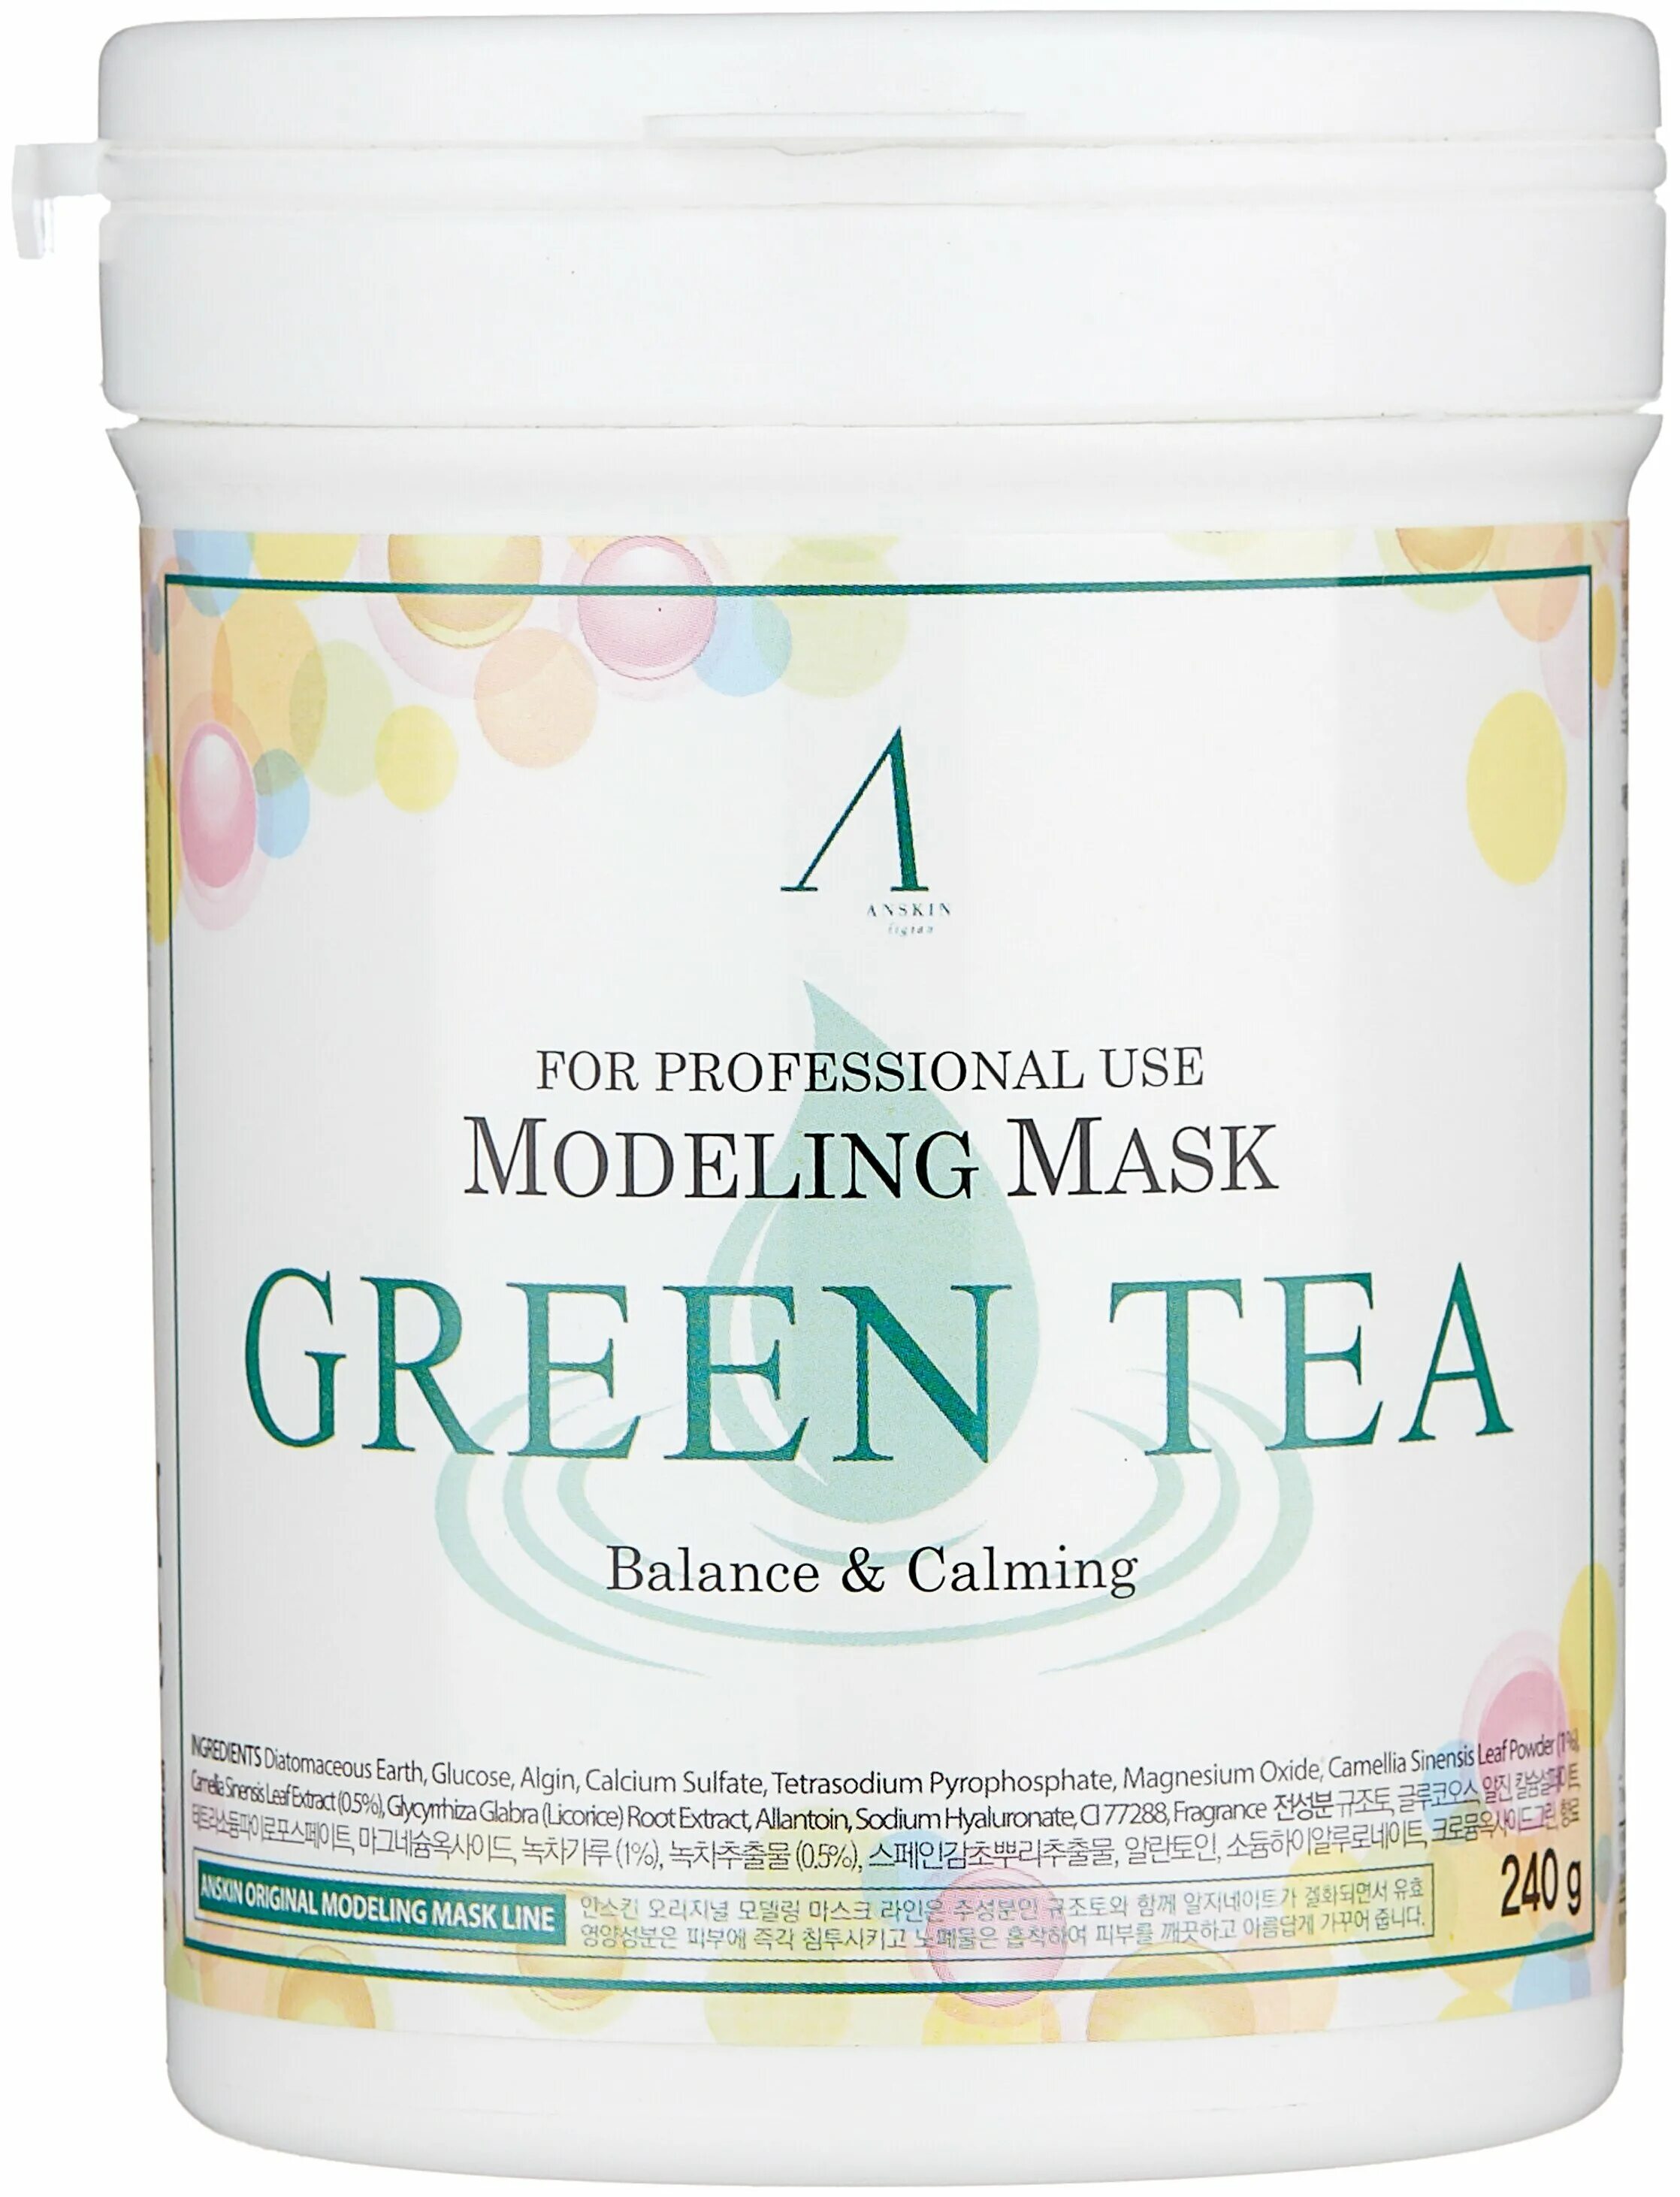 Альгинатная маска anskin. Anskin маска альгинатная Green Tea. Маска альгинатная с экстрактом зеленого чая - Anskin Green Tea Modeling Mask. Альгинатная маска Анскин. Альгинатная маска Корея Анскин.